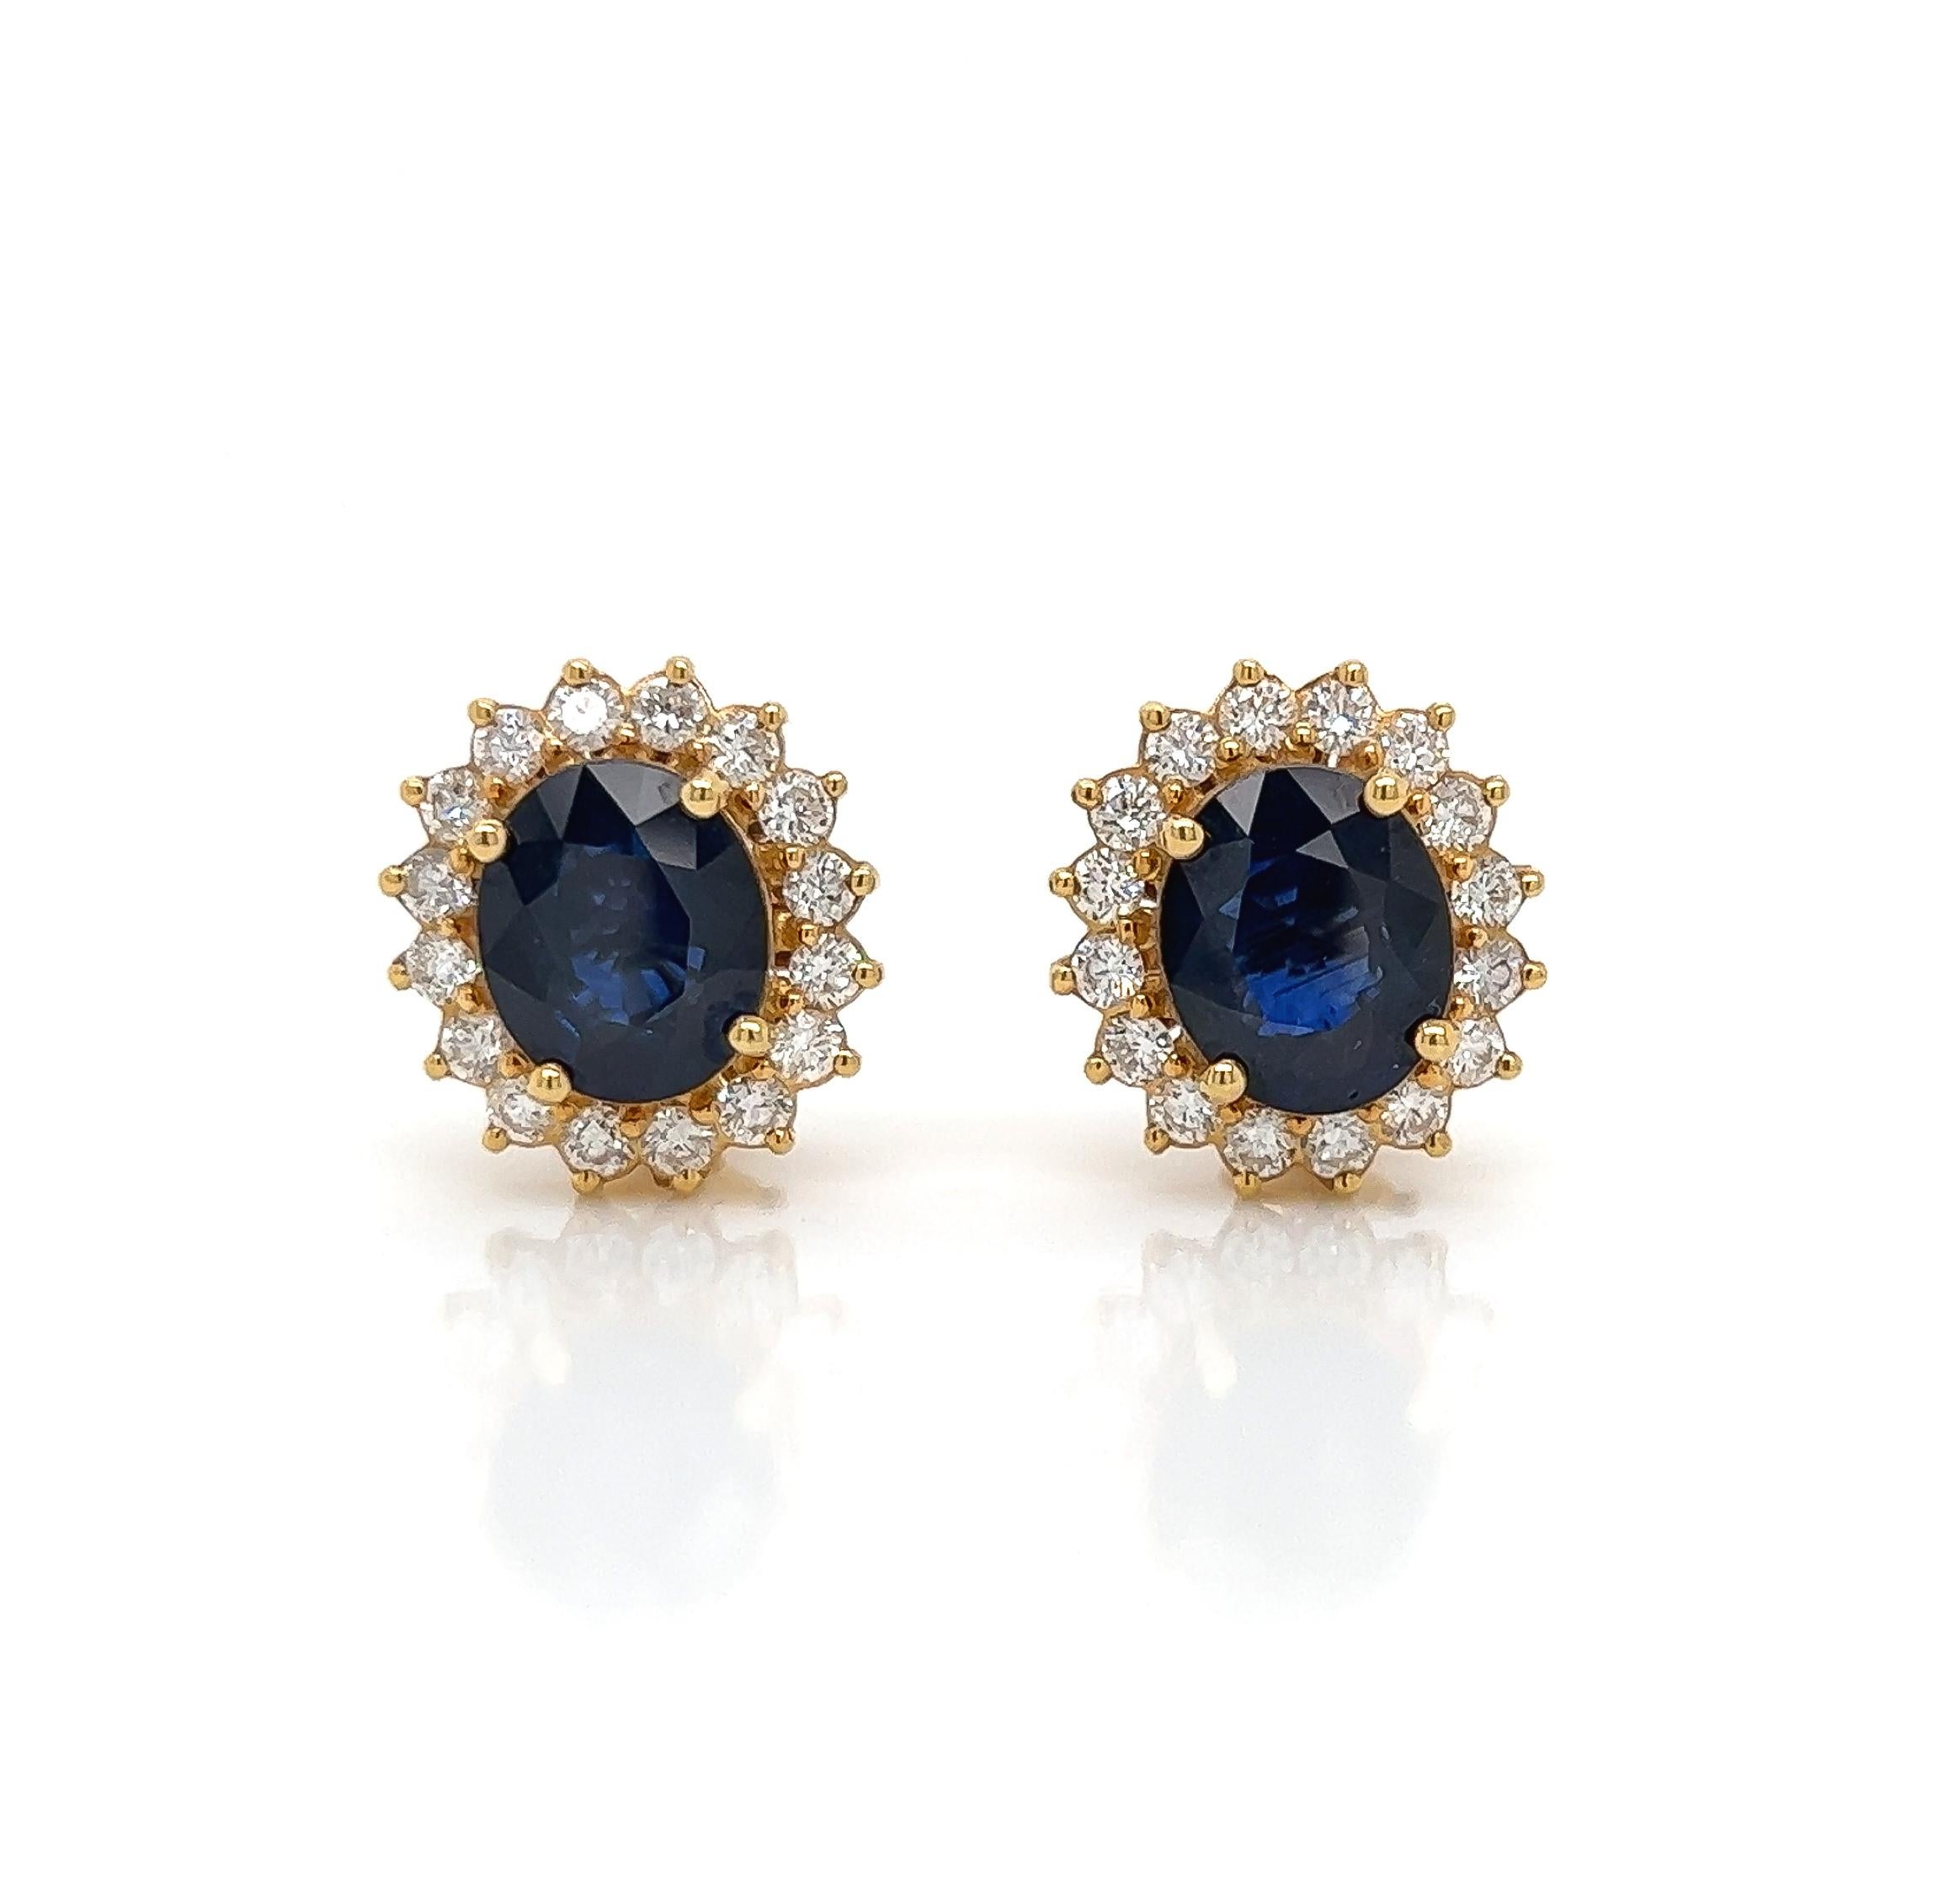 10.63 Gesamtkarat Saphir- und Diamant-Ohrringe im viktorianischen Stil aus 18 Karat Gold

Mit diesem wunderschönen Paar Saphir-Ohrringe ziehen Sie alle Blicke auf sich. Er besteht aus 8,79 Karat ovalen Saphiren, die von einem Halo aus runden